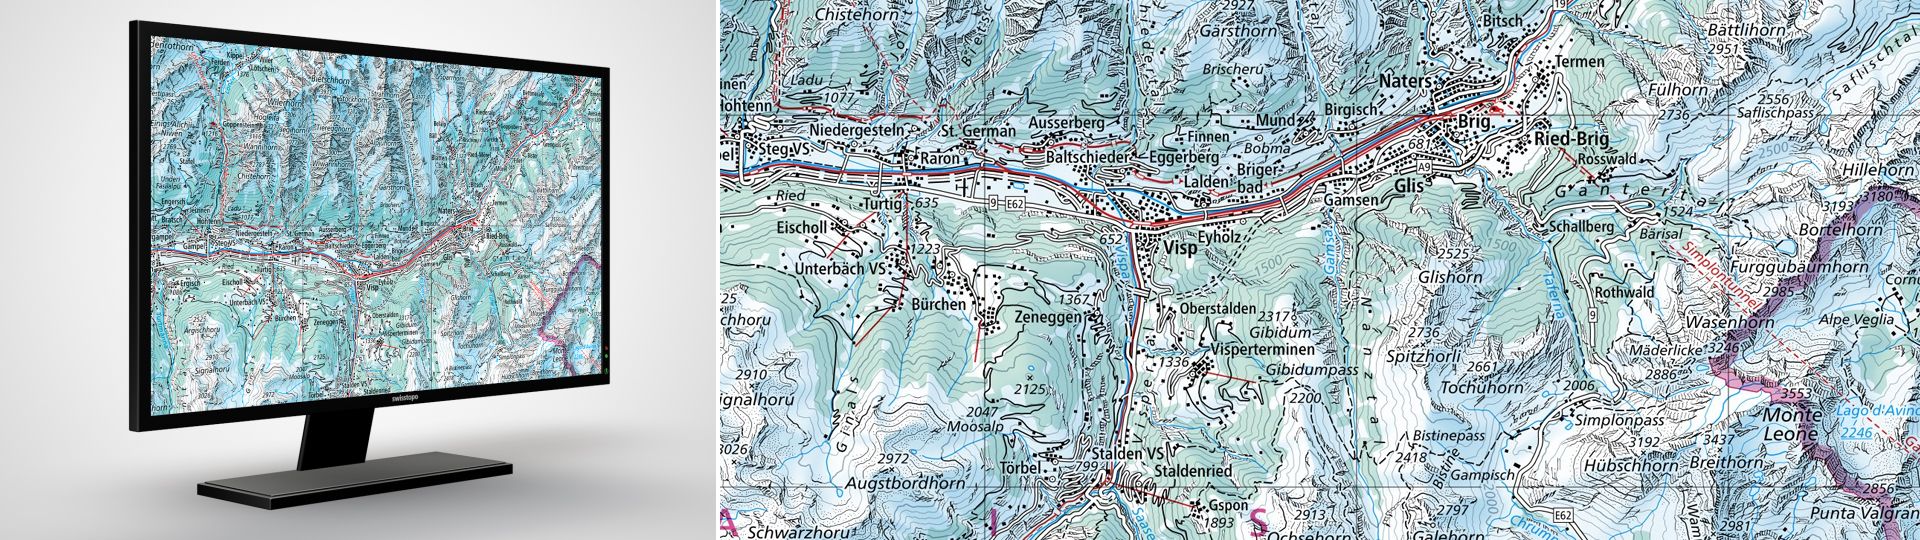 Swiss Map Raster Hiver 200: Swiss Map Raster Hiver 200 est l’édition d’hiver de la carte nationale numérique au 1:200 000 au format raster.